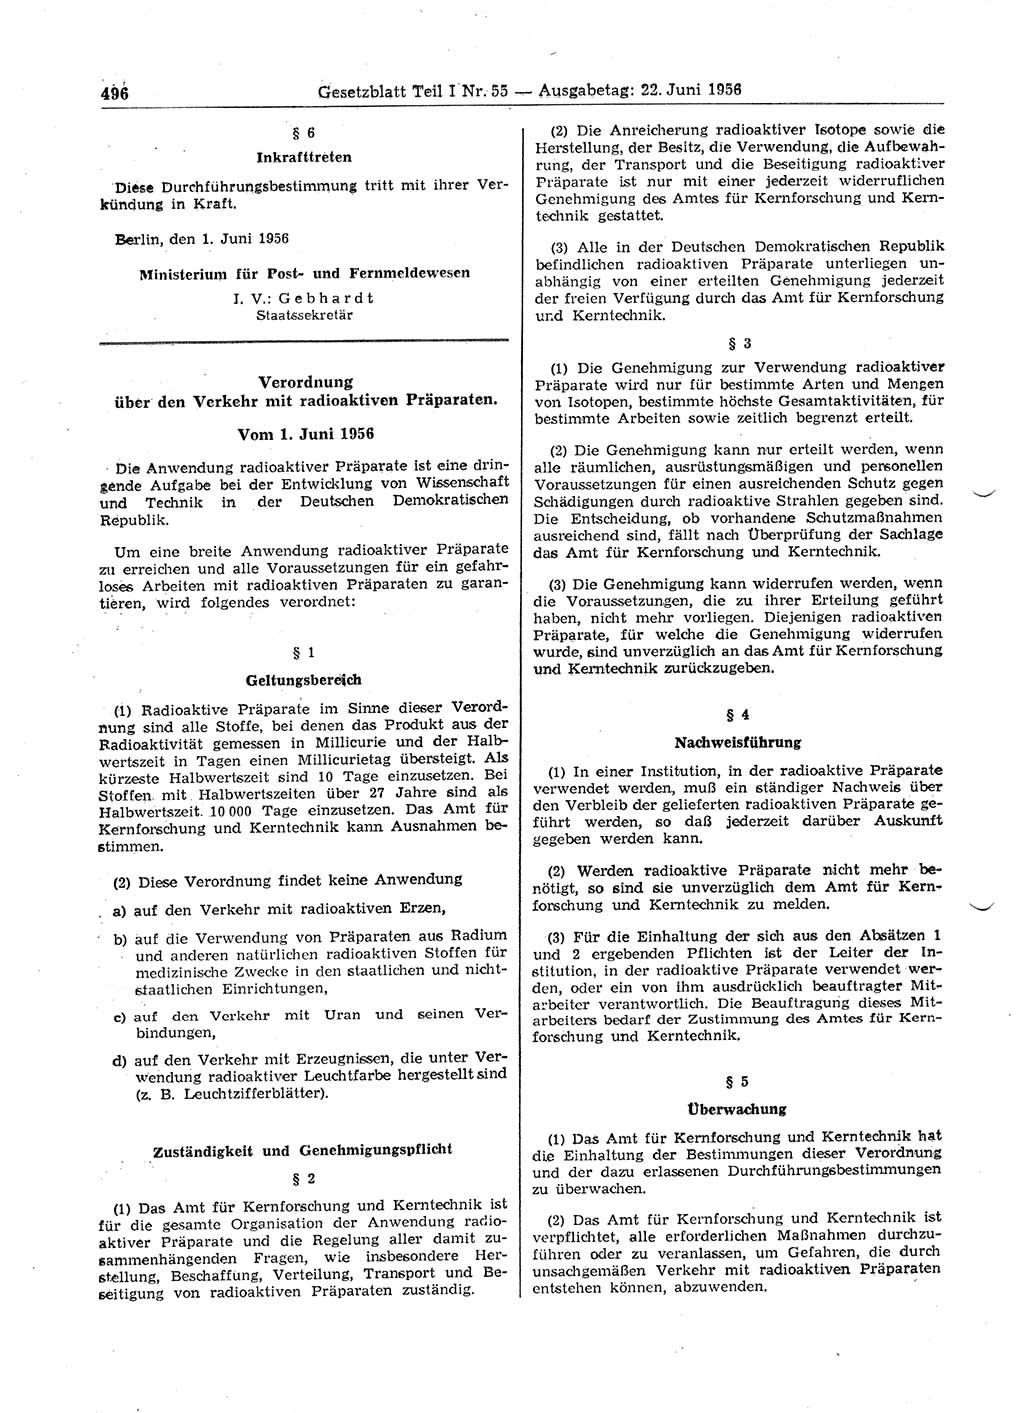 Gesetzblatt (GBl.) der Deutschen Demokratischen Republik (DDR) Teil Ⅰ 1956, Seite 496 (GBl. DDR Ⅰ 1956, S. 496)